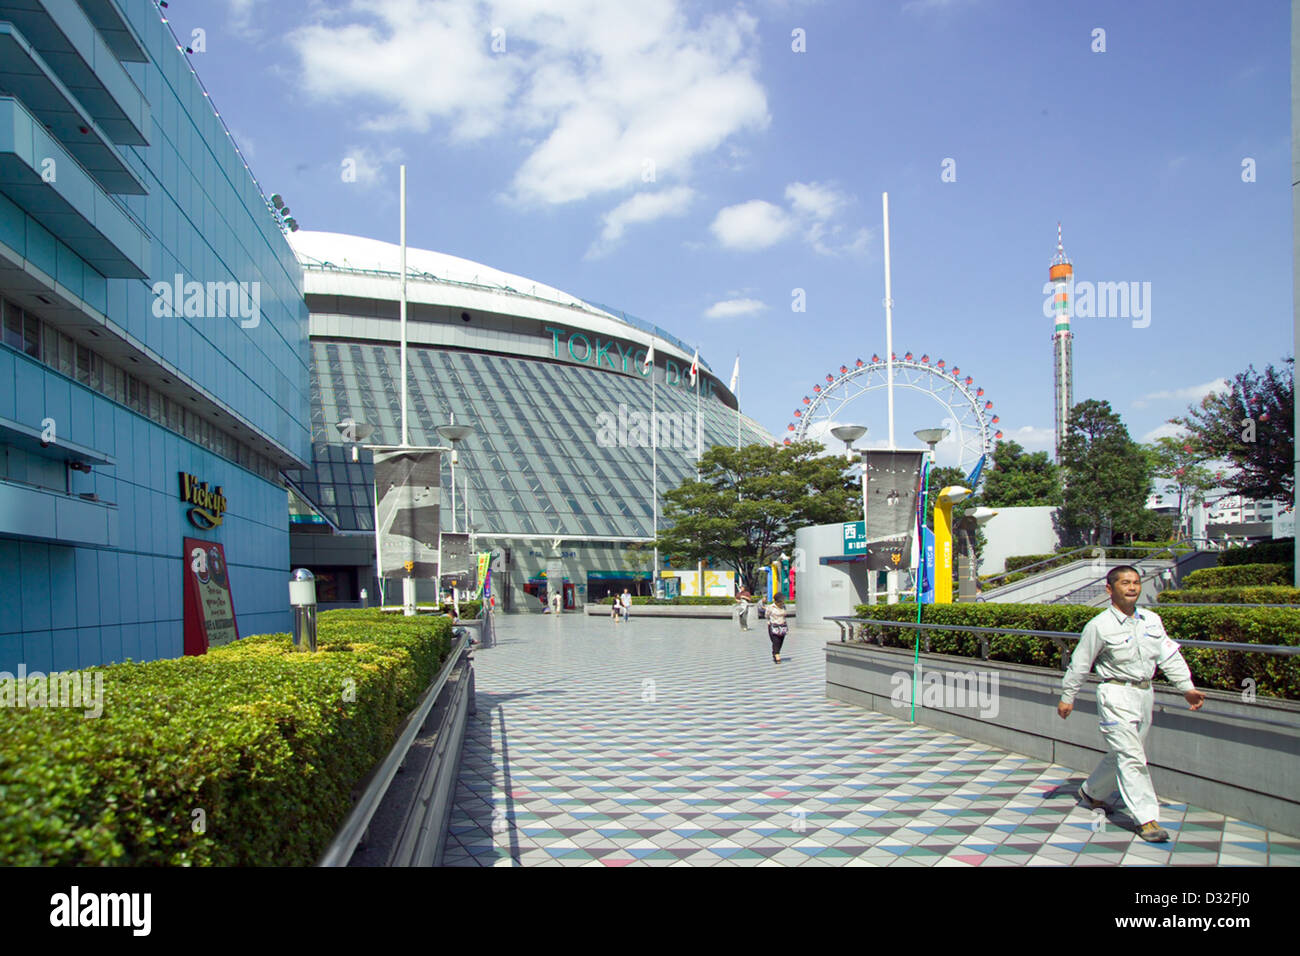 Le Tokyo Dome baseball stadium, à côté de la gare JR Suidobashi sur Chuo-Sobu Line,Tokyo, Japon Banque D'Images